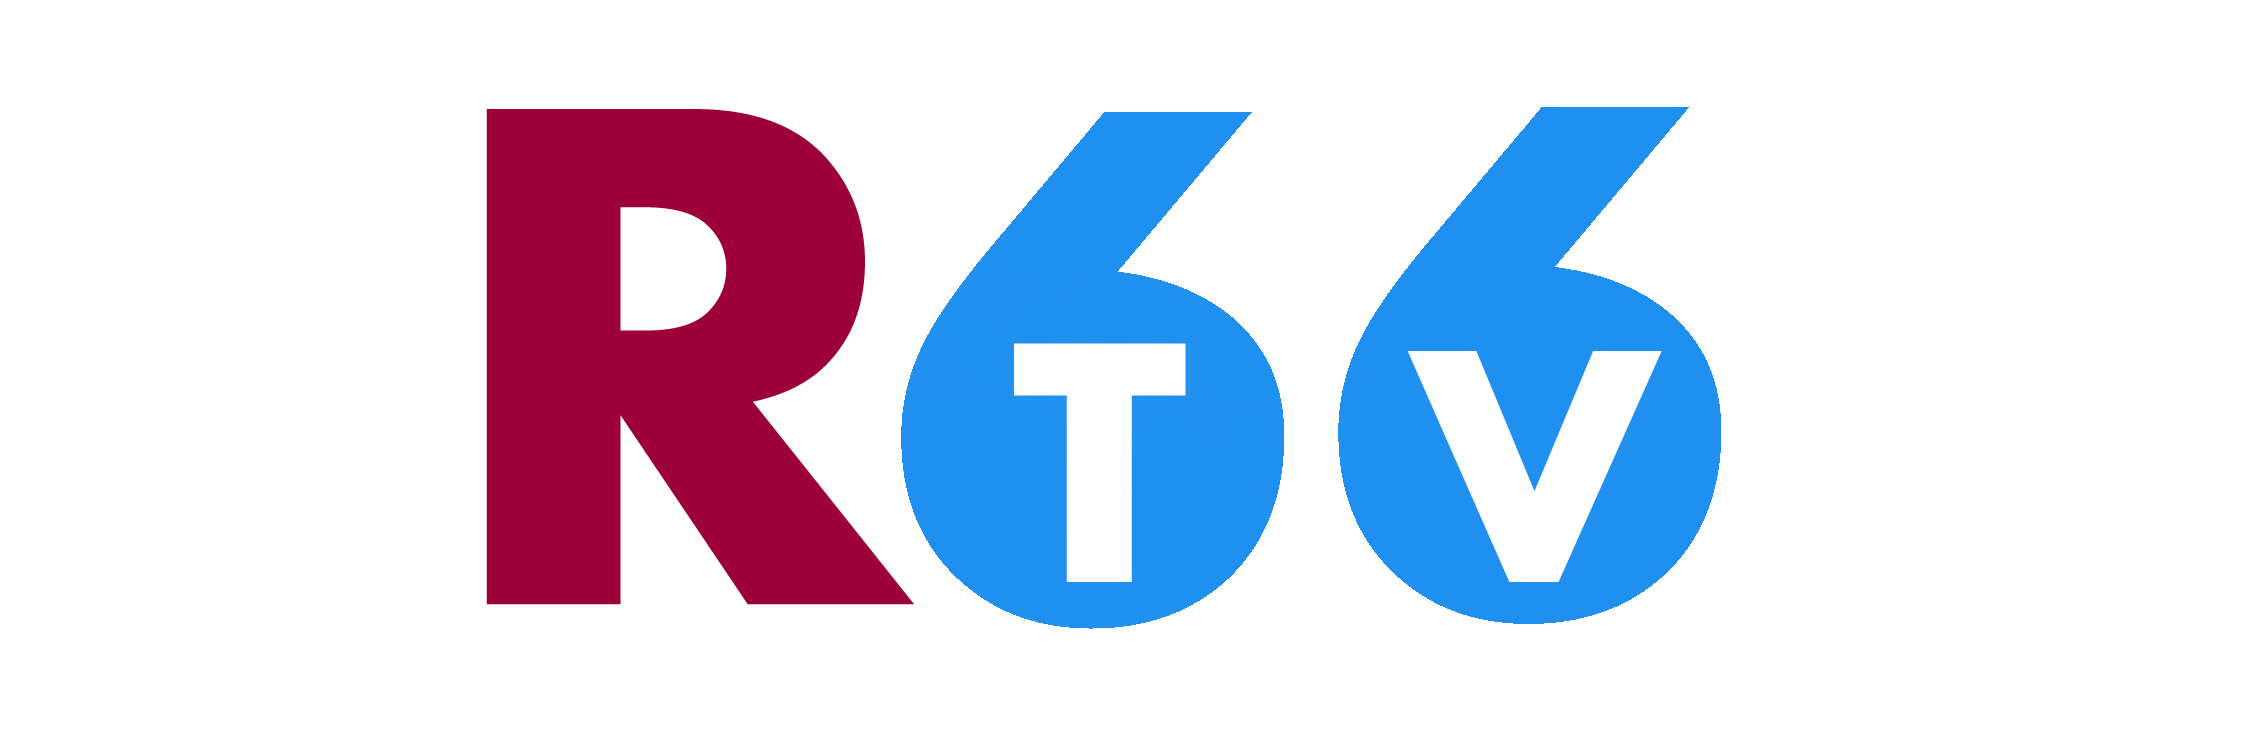 Rtv66 TV